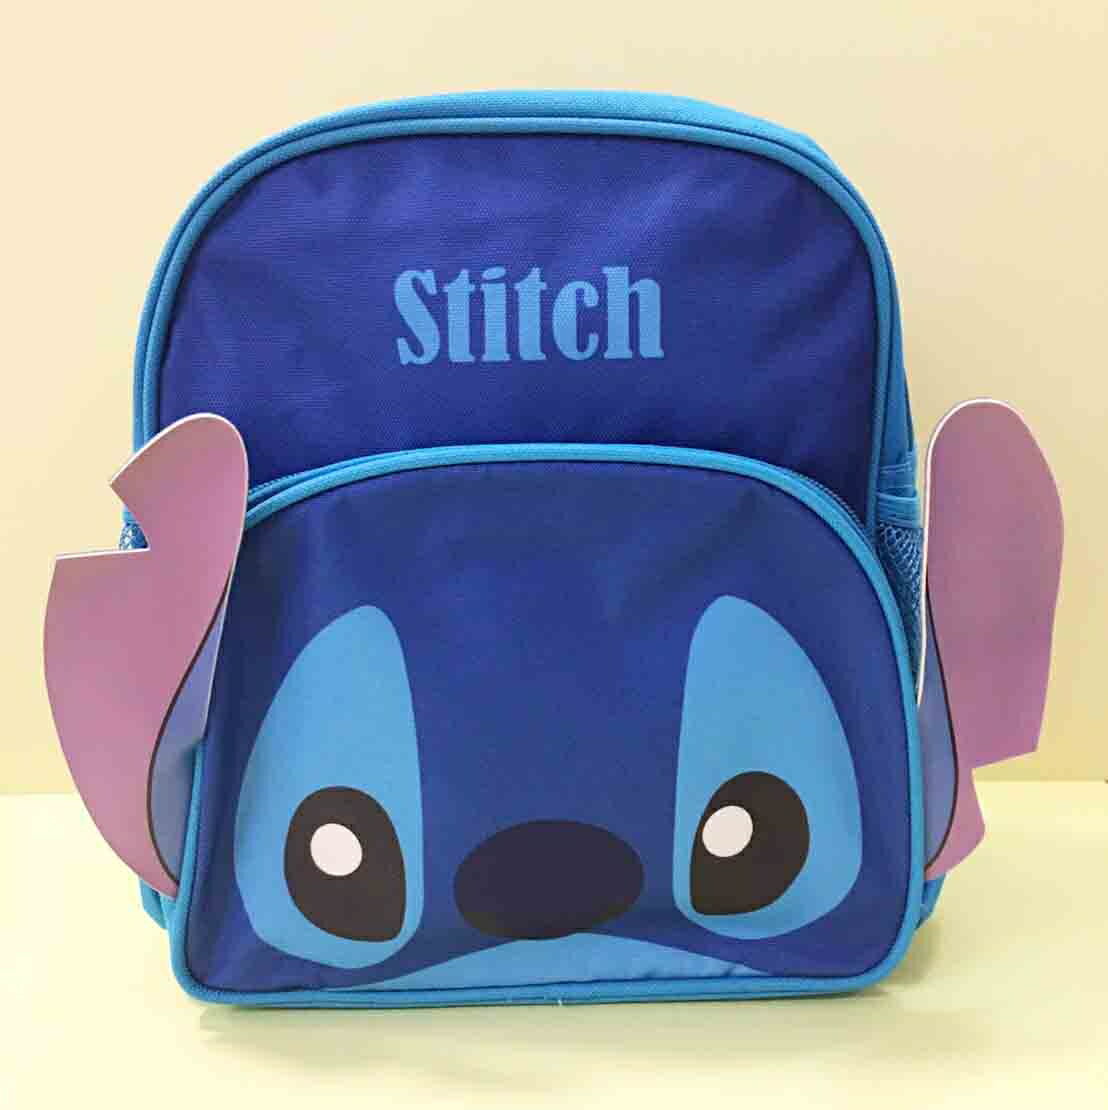 【震撼精品百貨】Stitch 星際寶貝史迪奇 迪士尼史迪奇後背包-藍#69000 震撼日式精品百貨